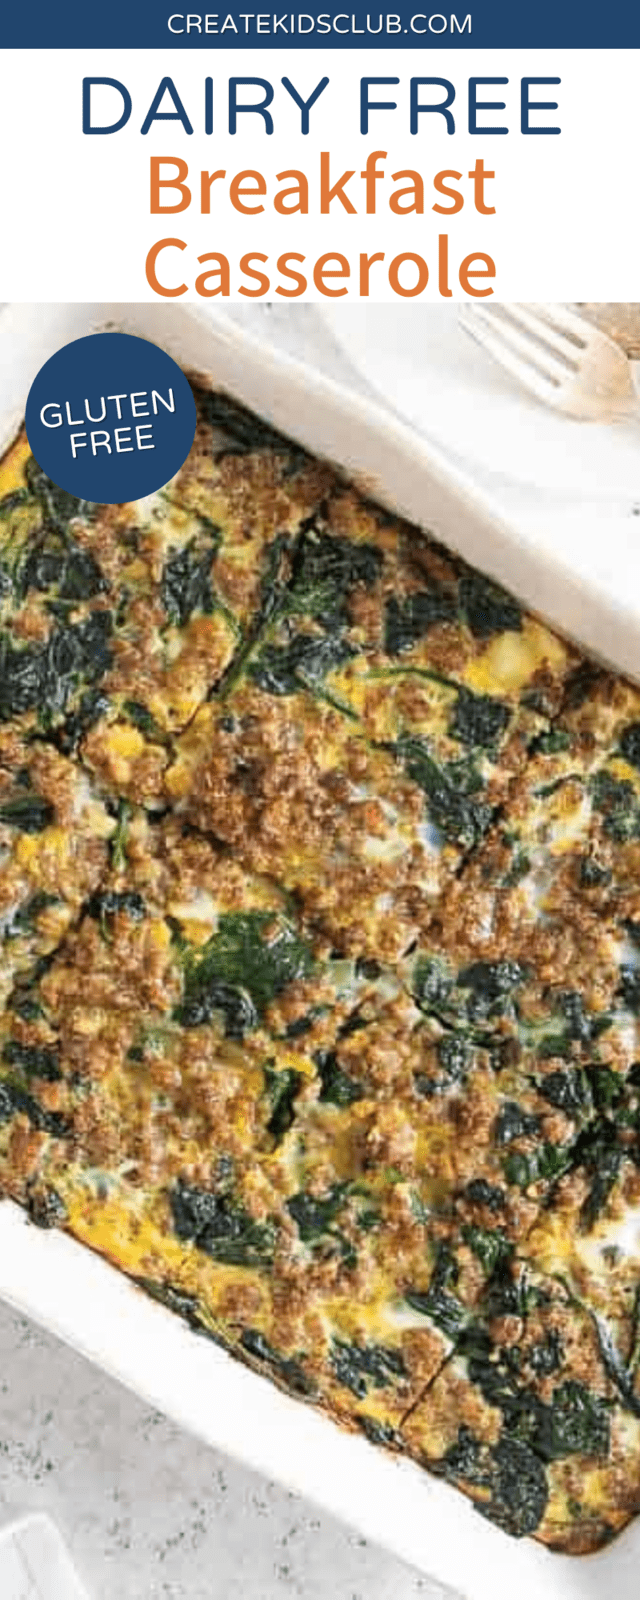 Pinterest image of dairy free breakfast casserole